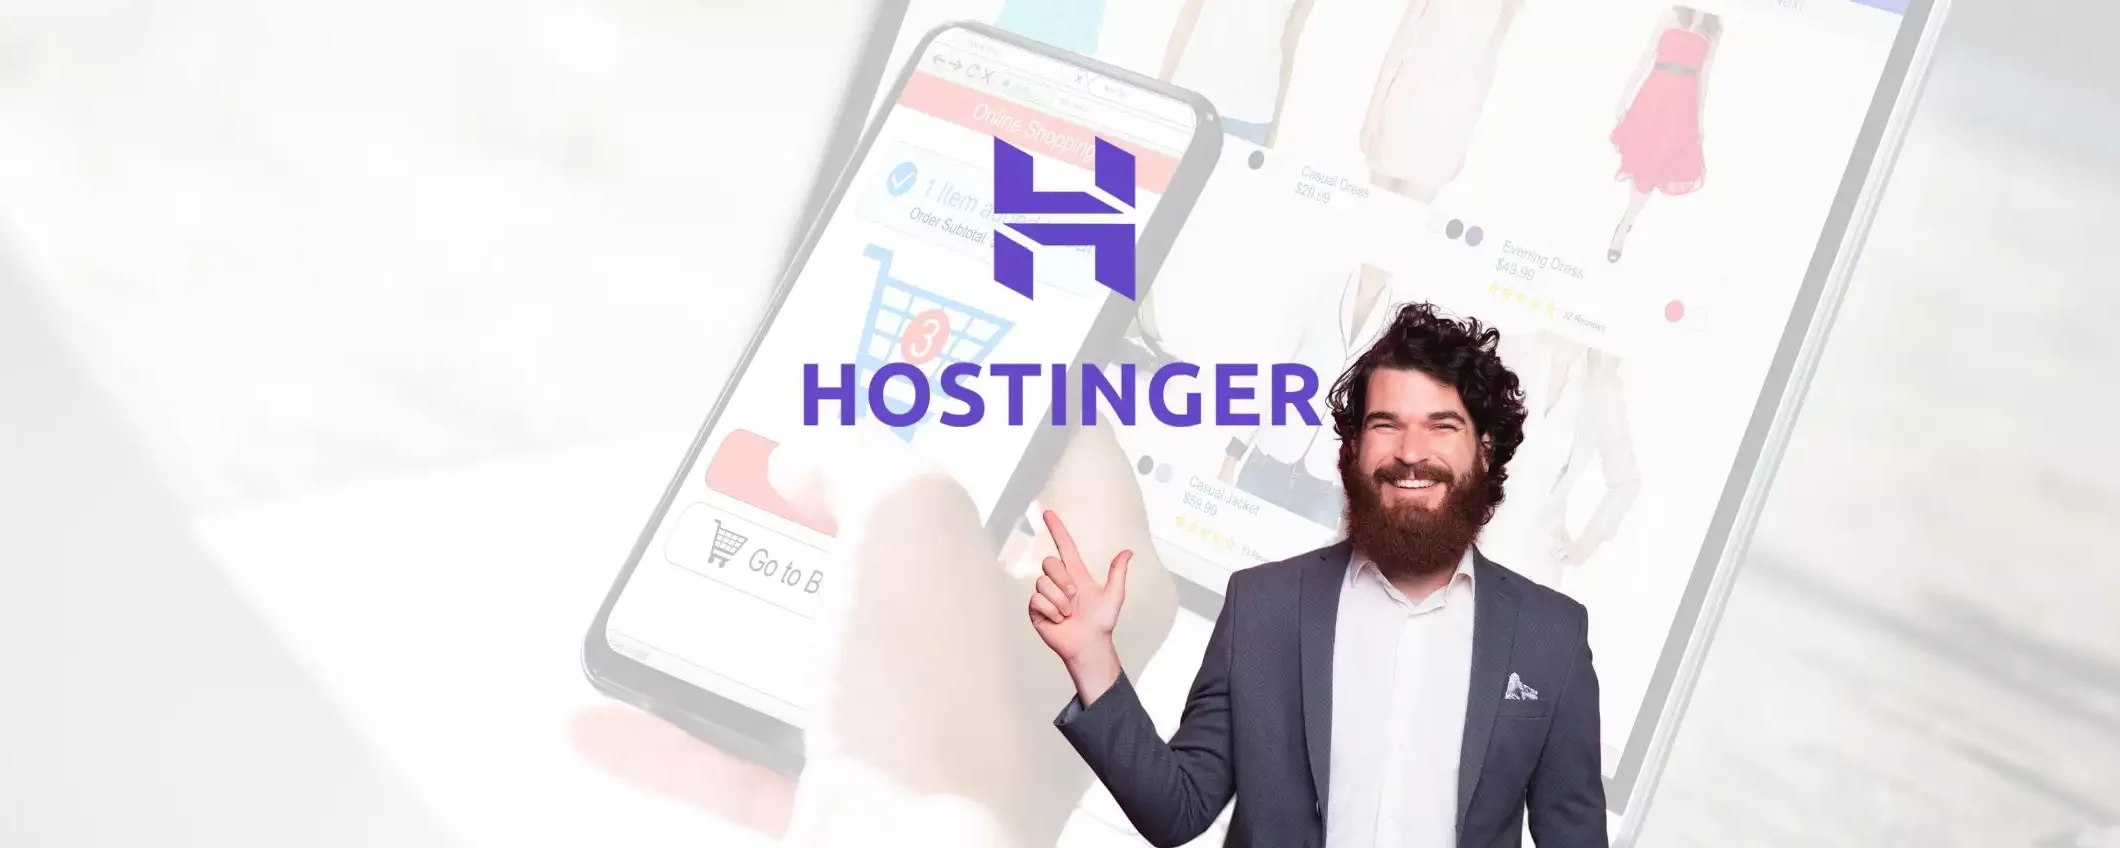 Perché Hostinger è il servizio di hosting web a 2,99 euro al mese che devi scegliere